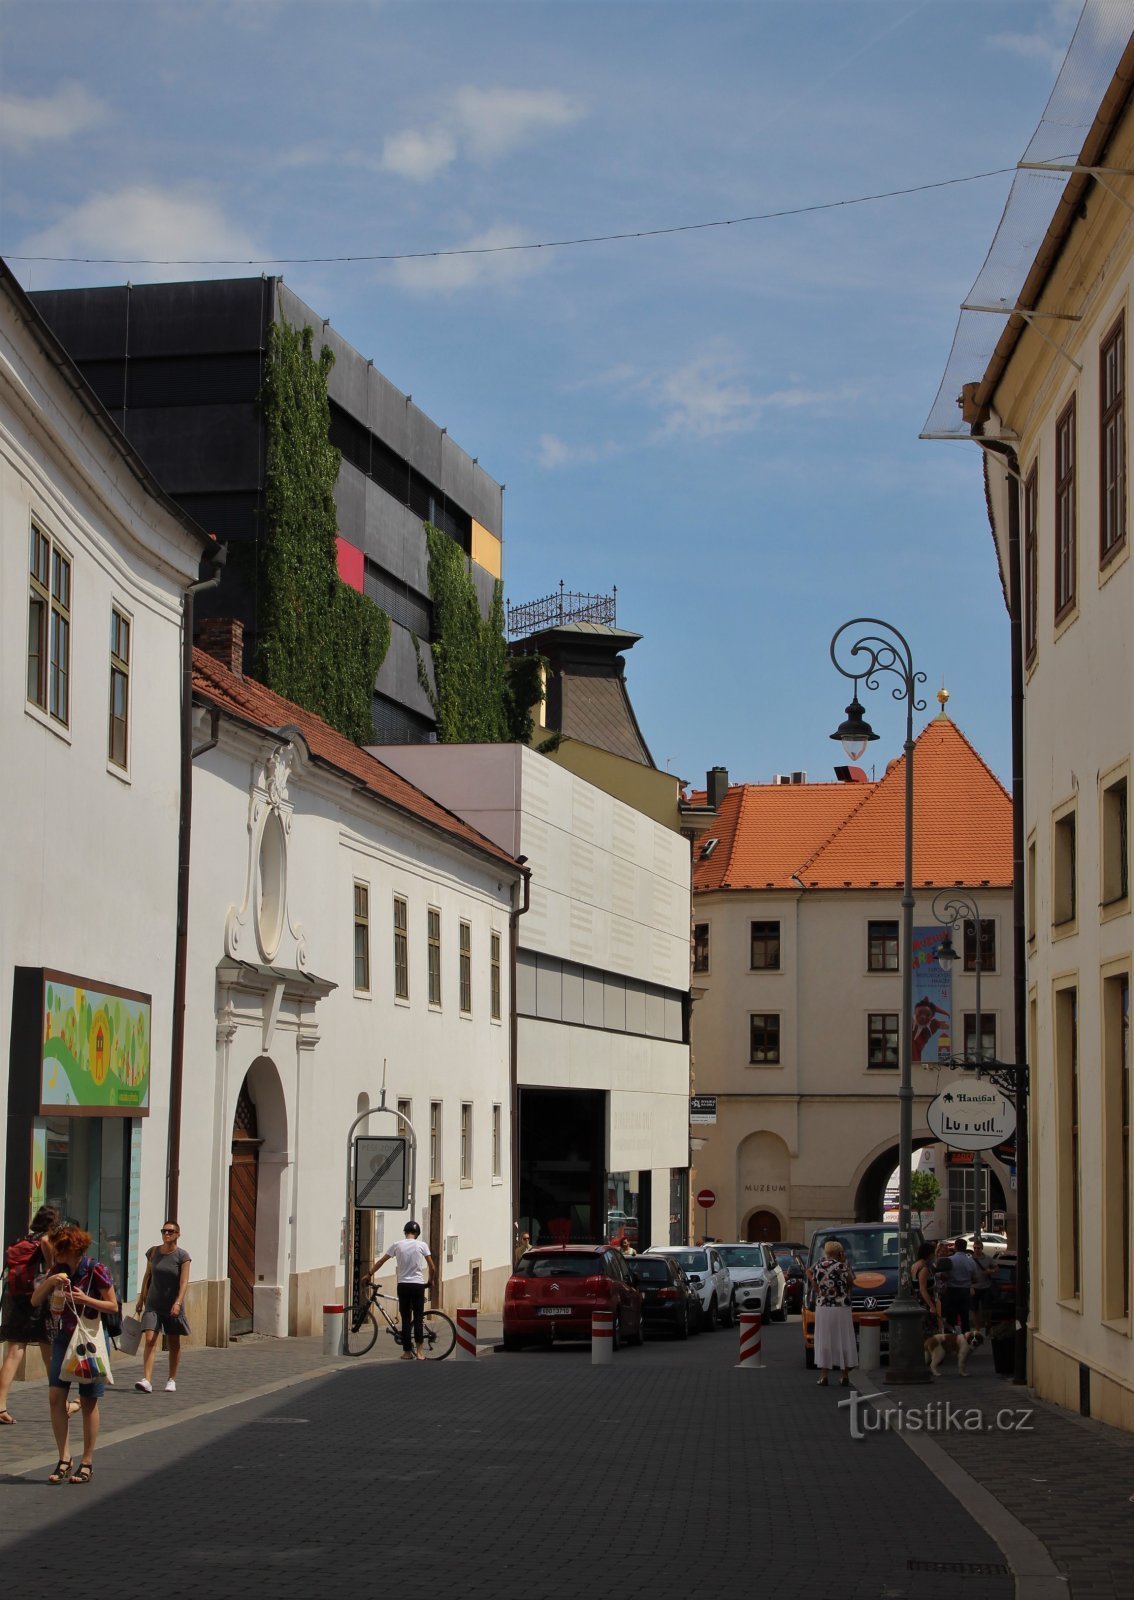 Orlí street in the background with Menínská gate